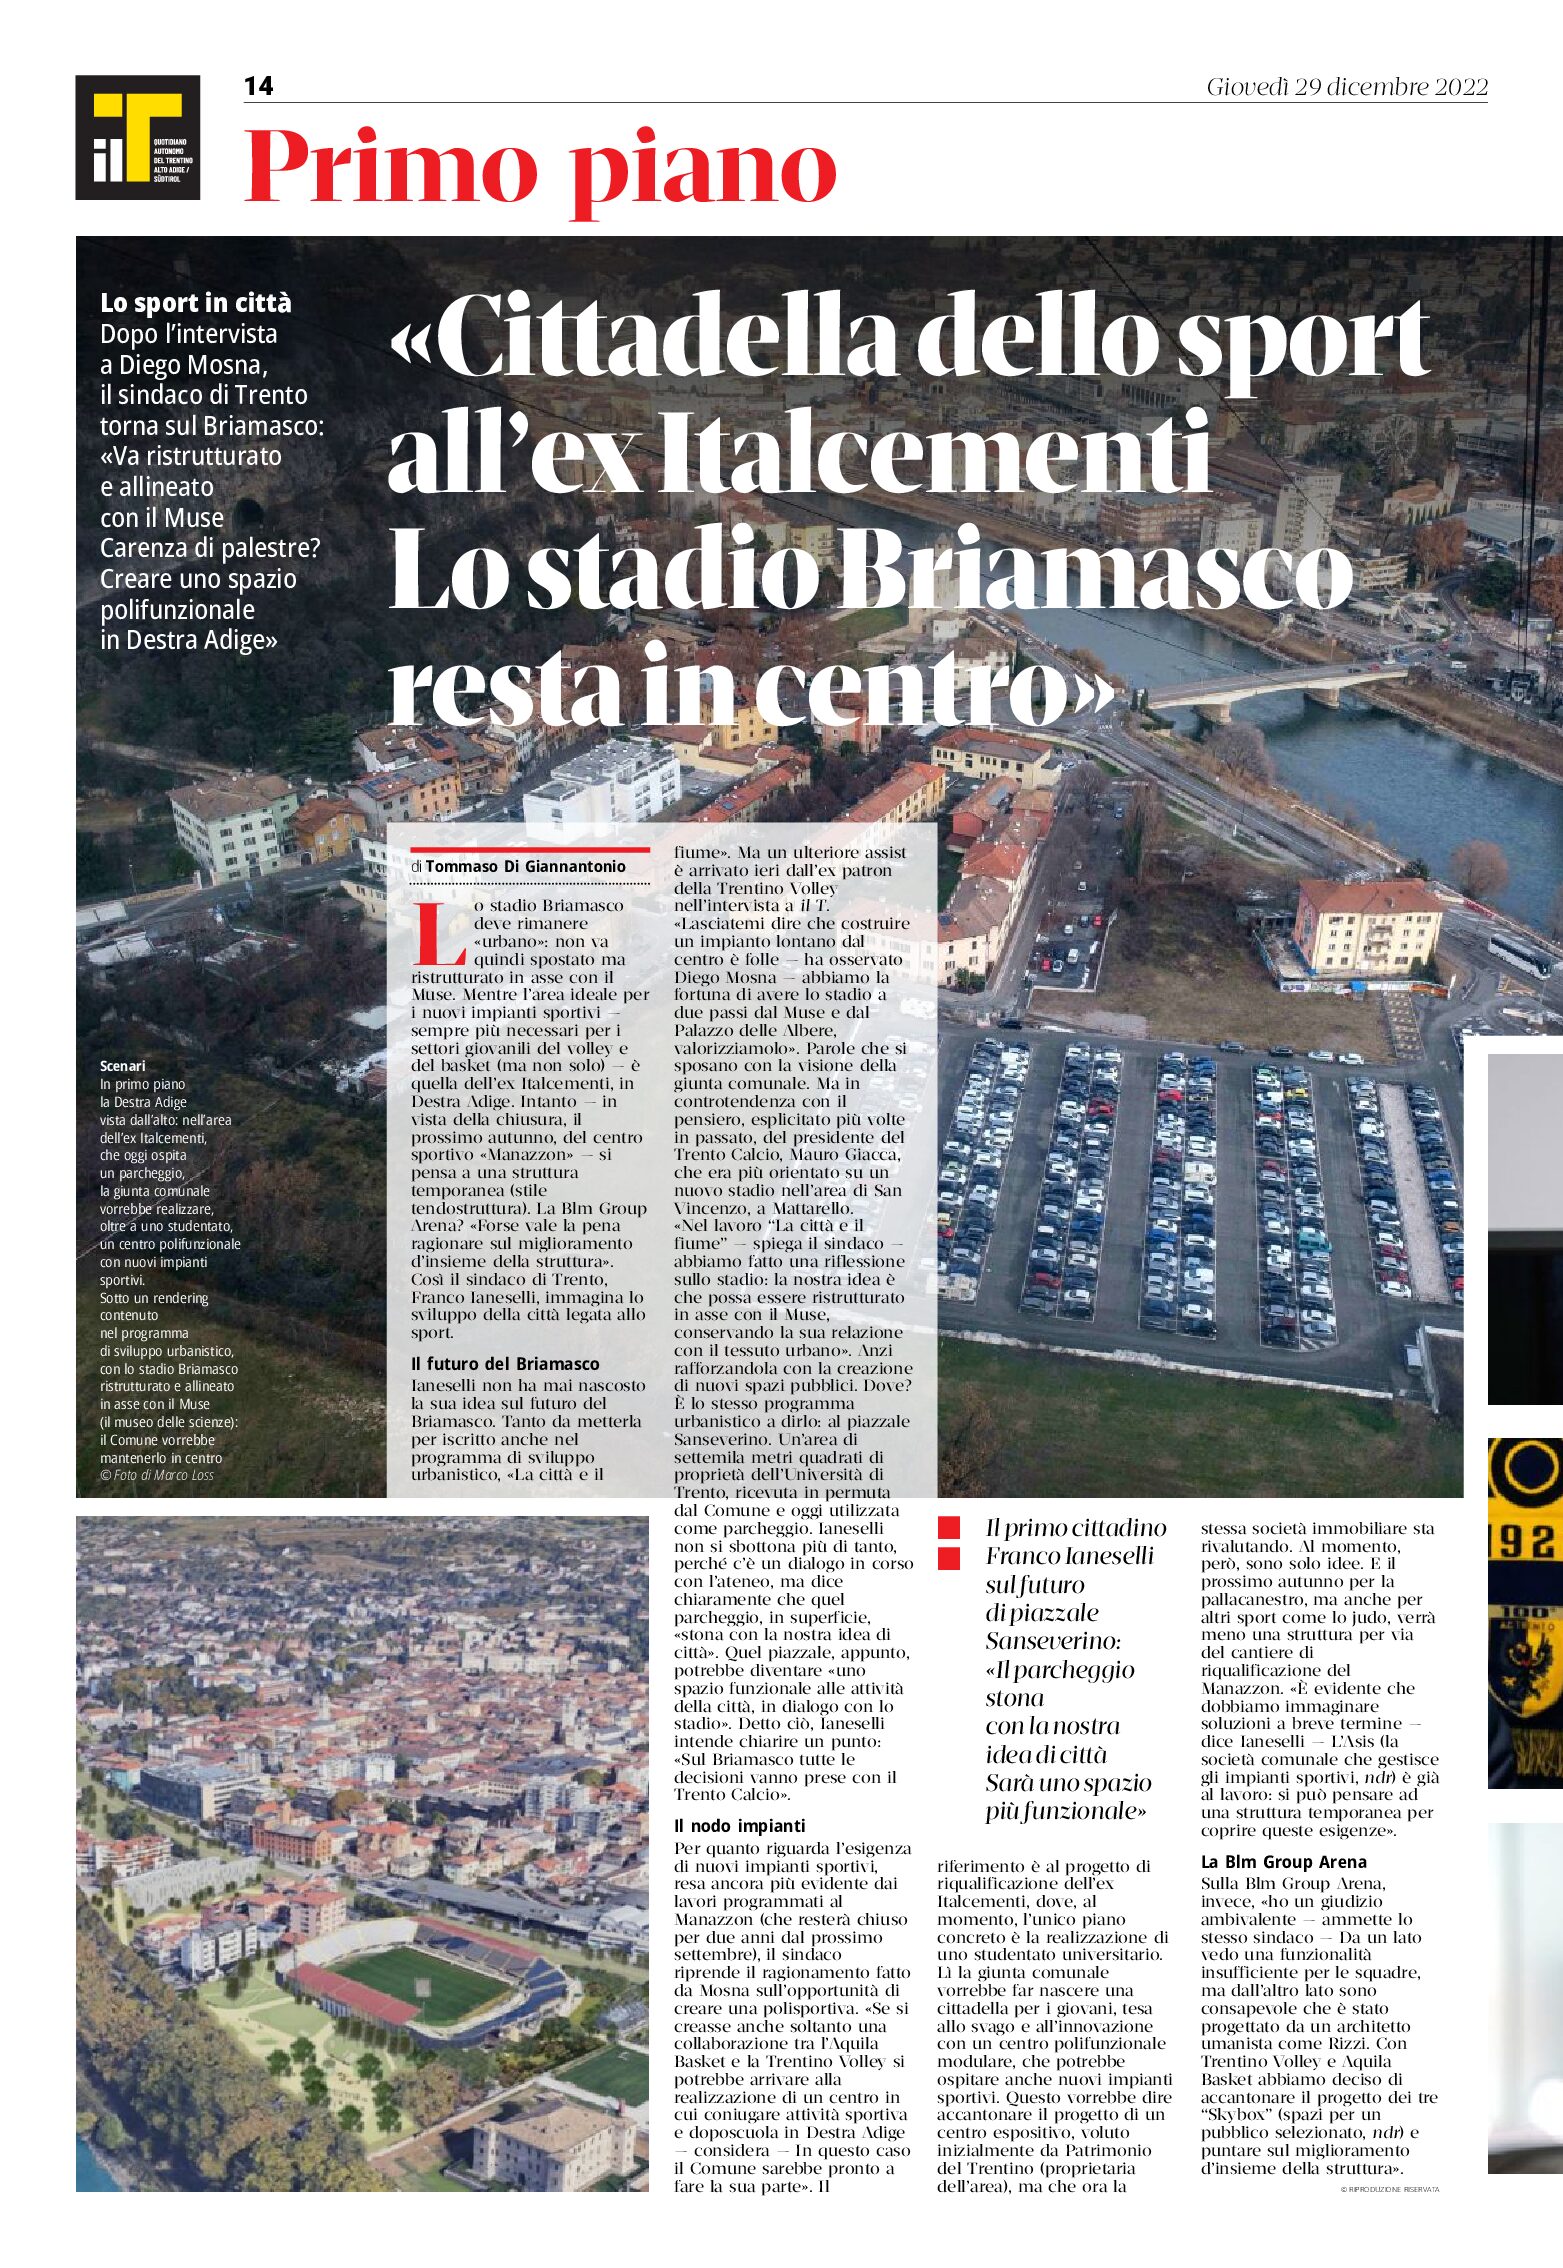 Trento: la Cittadella dello sport all’ex Italcementi, lo stadio Briamasco resta in centro